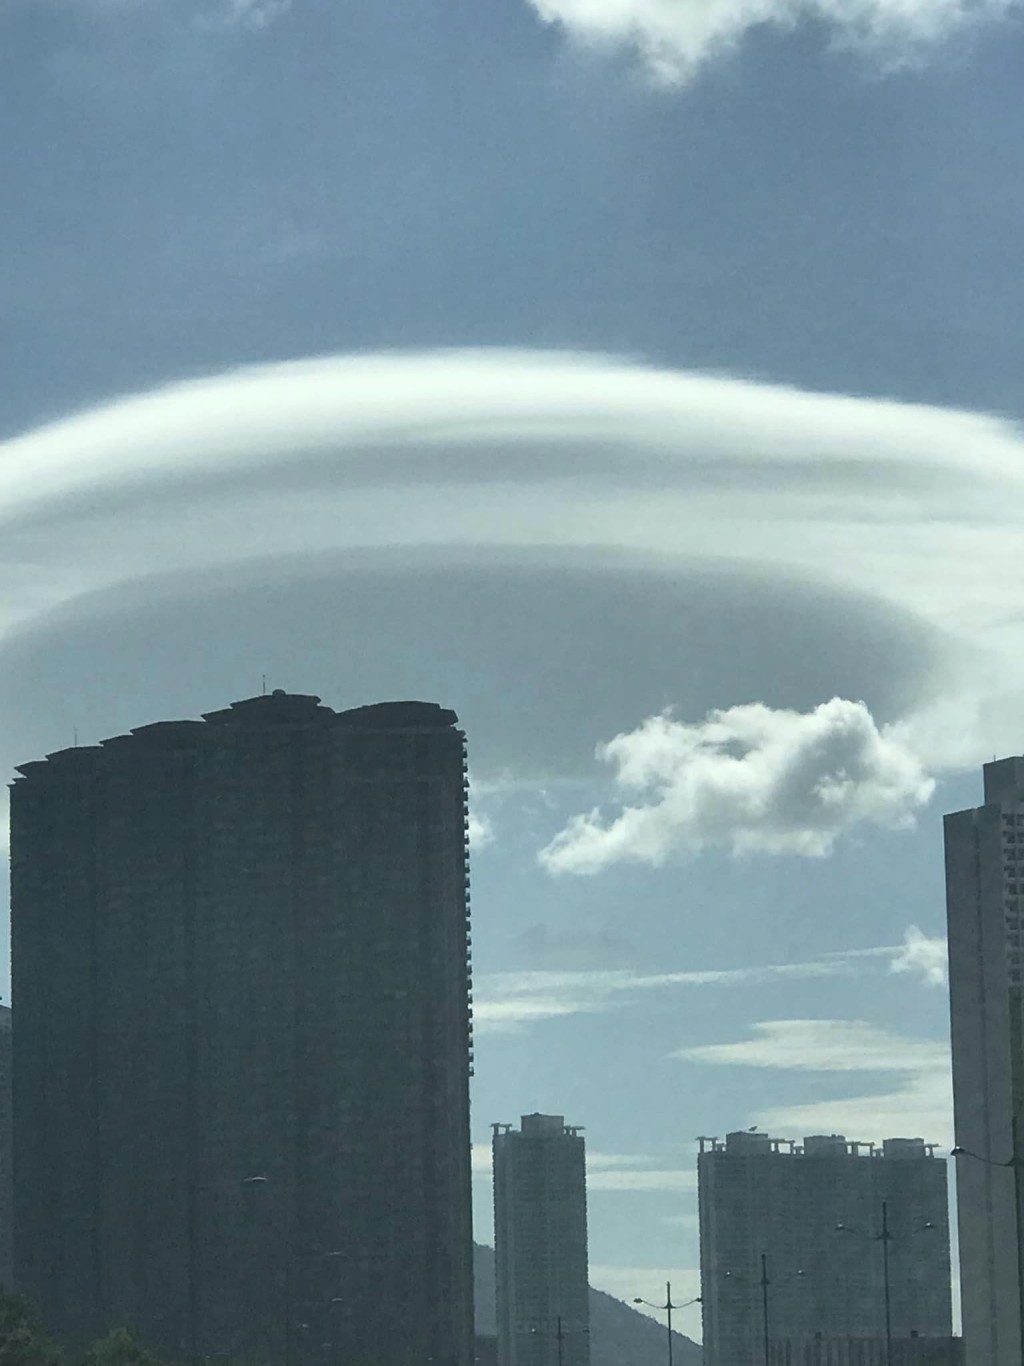 荚状云的成因，是由于气流遇到山脉而被迫抬升，引起上下起伏而形成。fb「香港风景摄影会」Chan Wai Nang摄